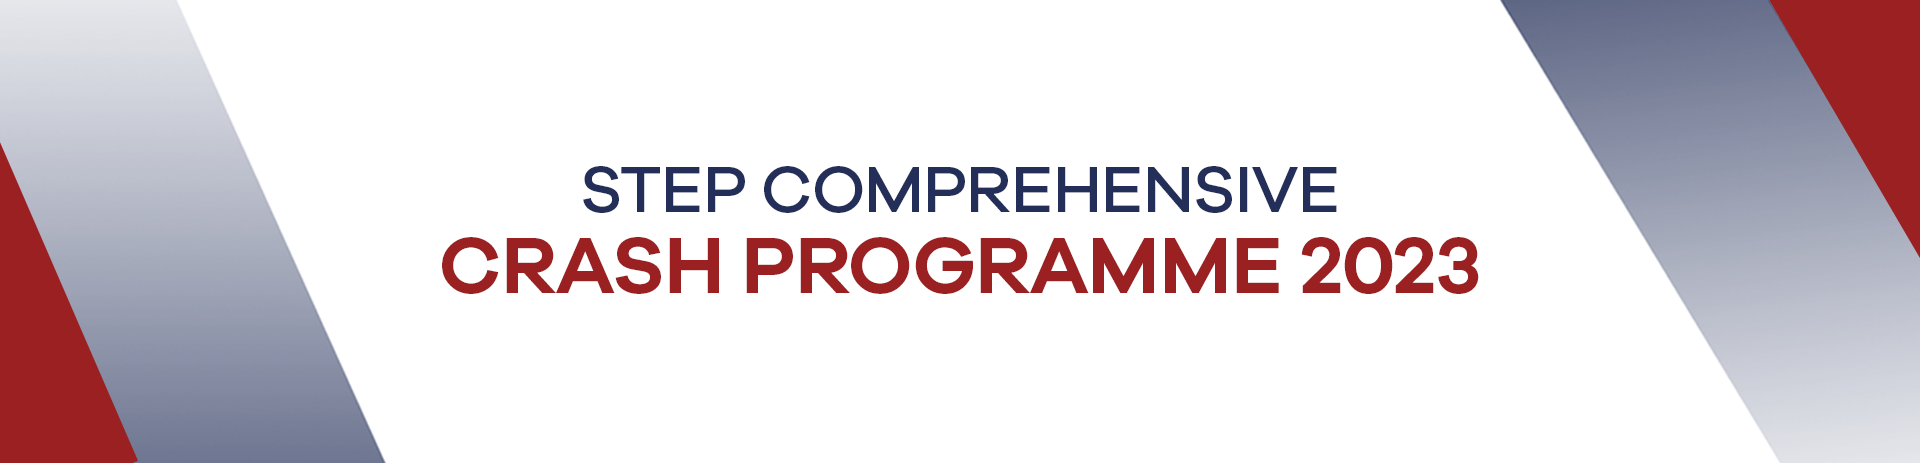 STEP Comprehensive Crash Programme 2023